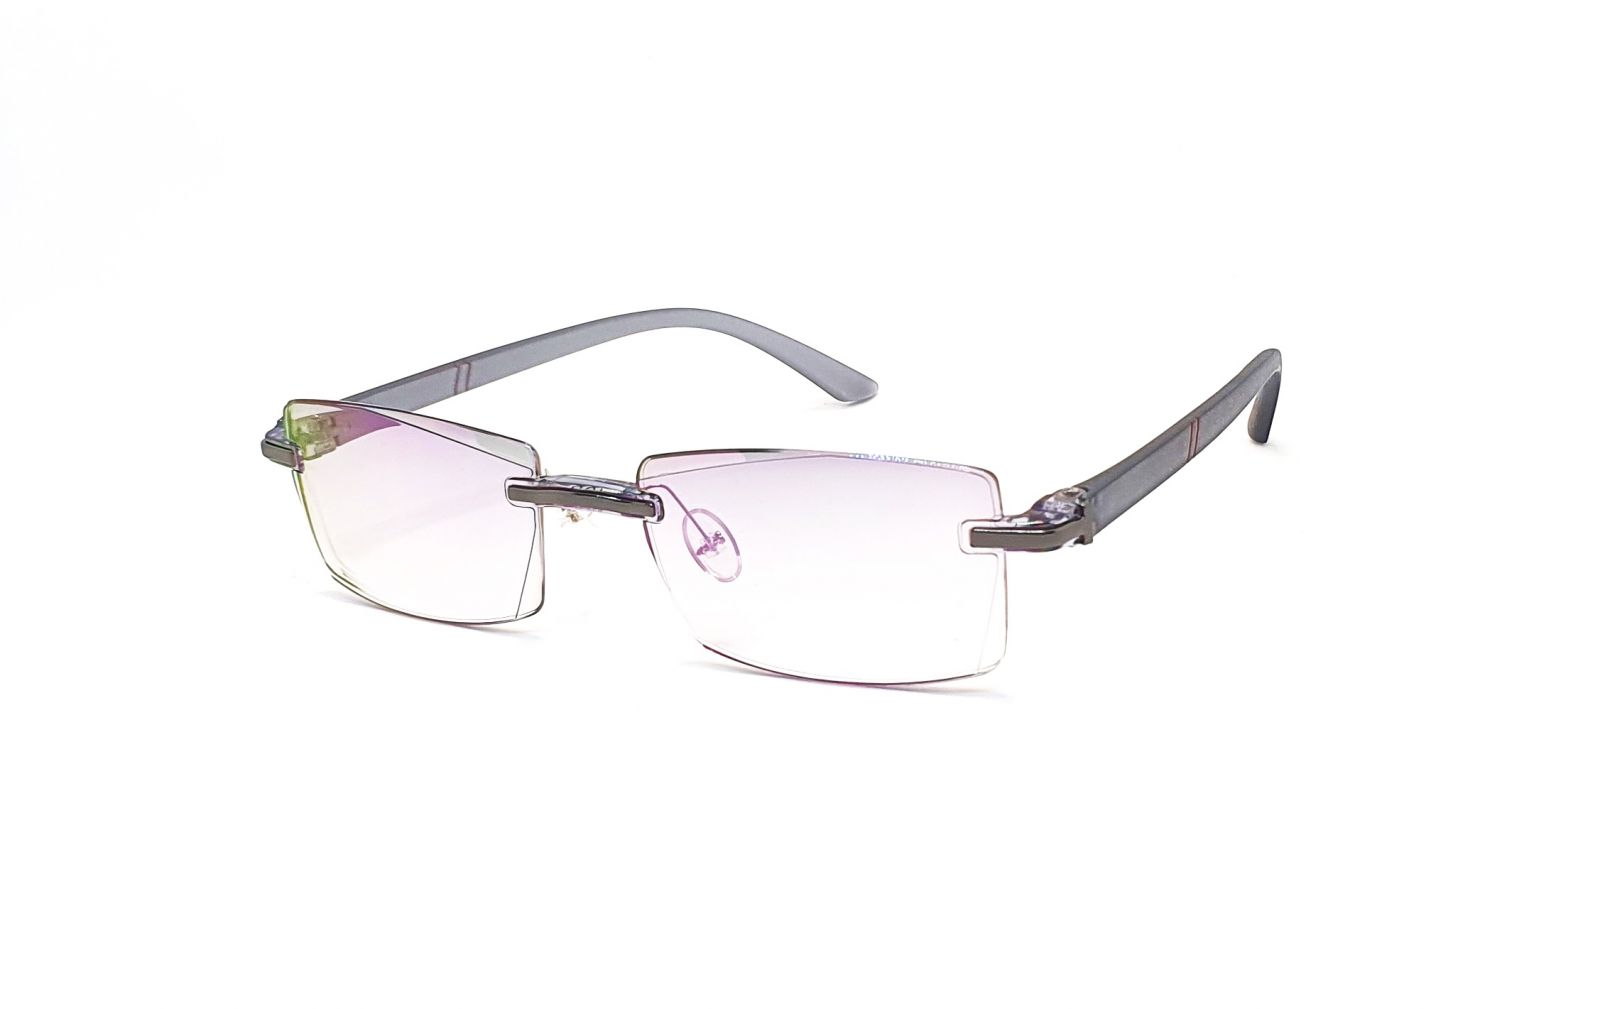 Bezrámečkové dioptrické brýle 346 / -3,00 s antireflexní vrstvou